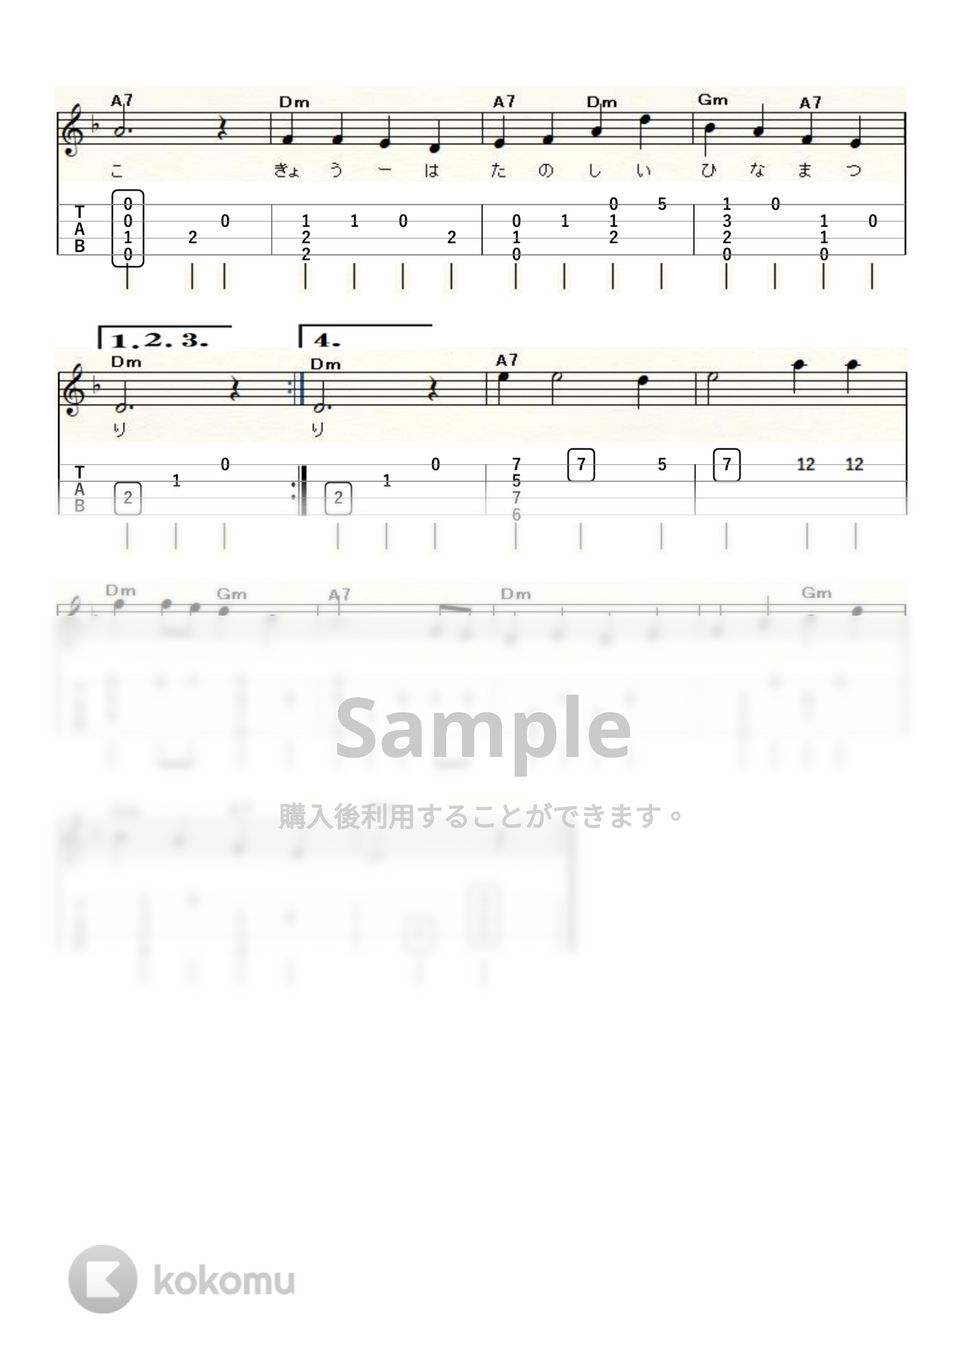 うれしい ひなまつり (ｳｸﾚﾚｿﾛ / High-G・Low-G / 初級～中級) by ukulelepapa